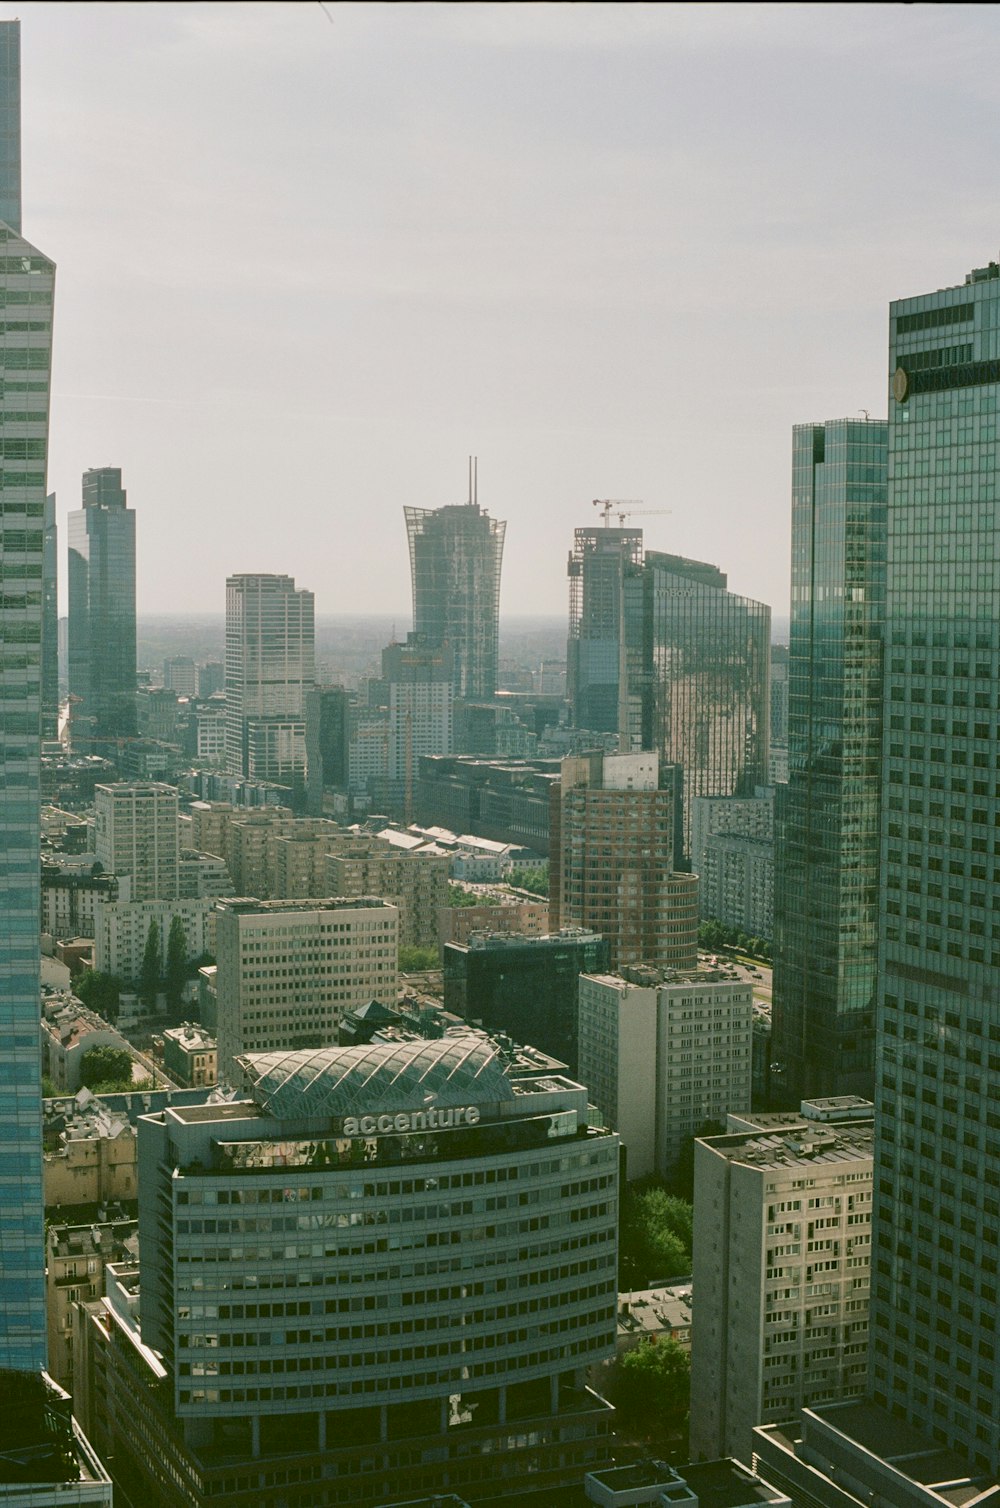 Une vue d’une ville avec de grands immeubles